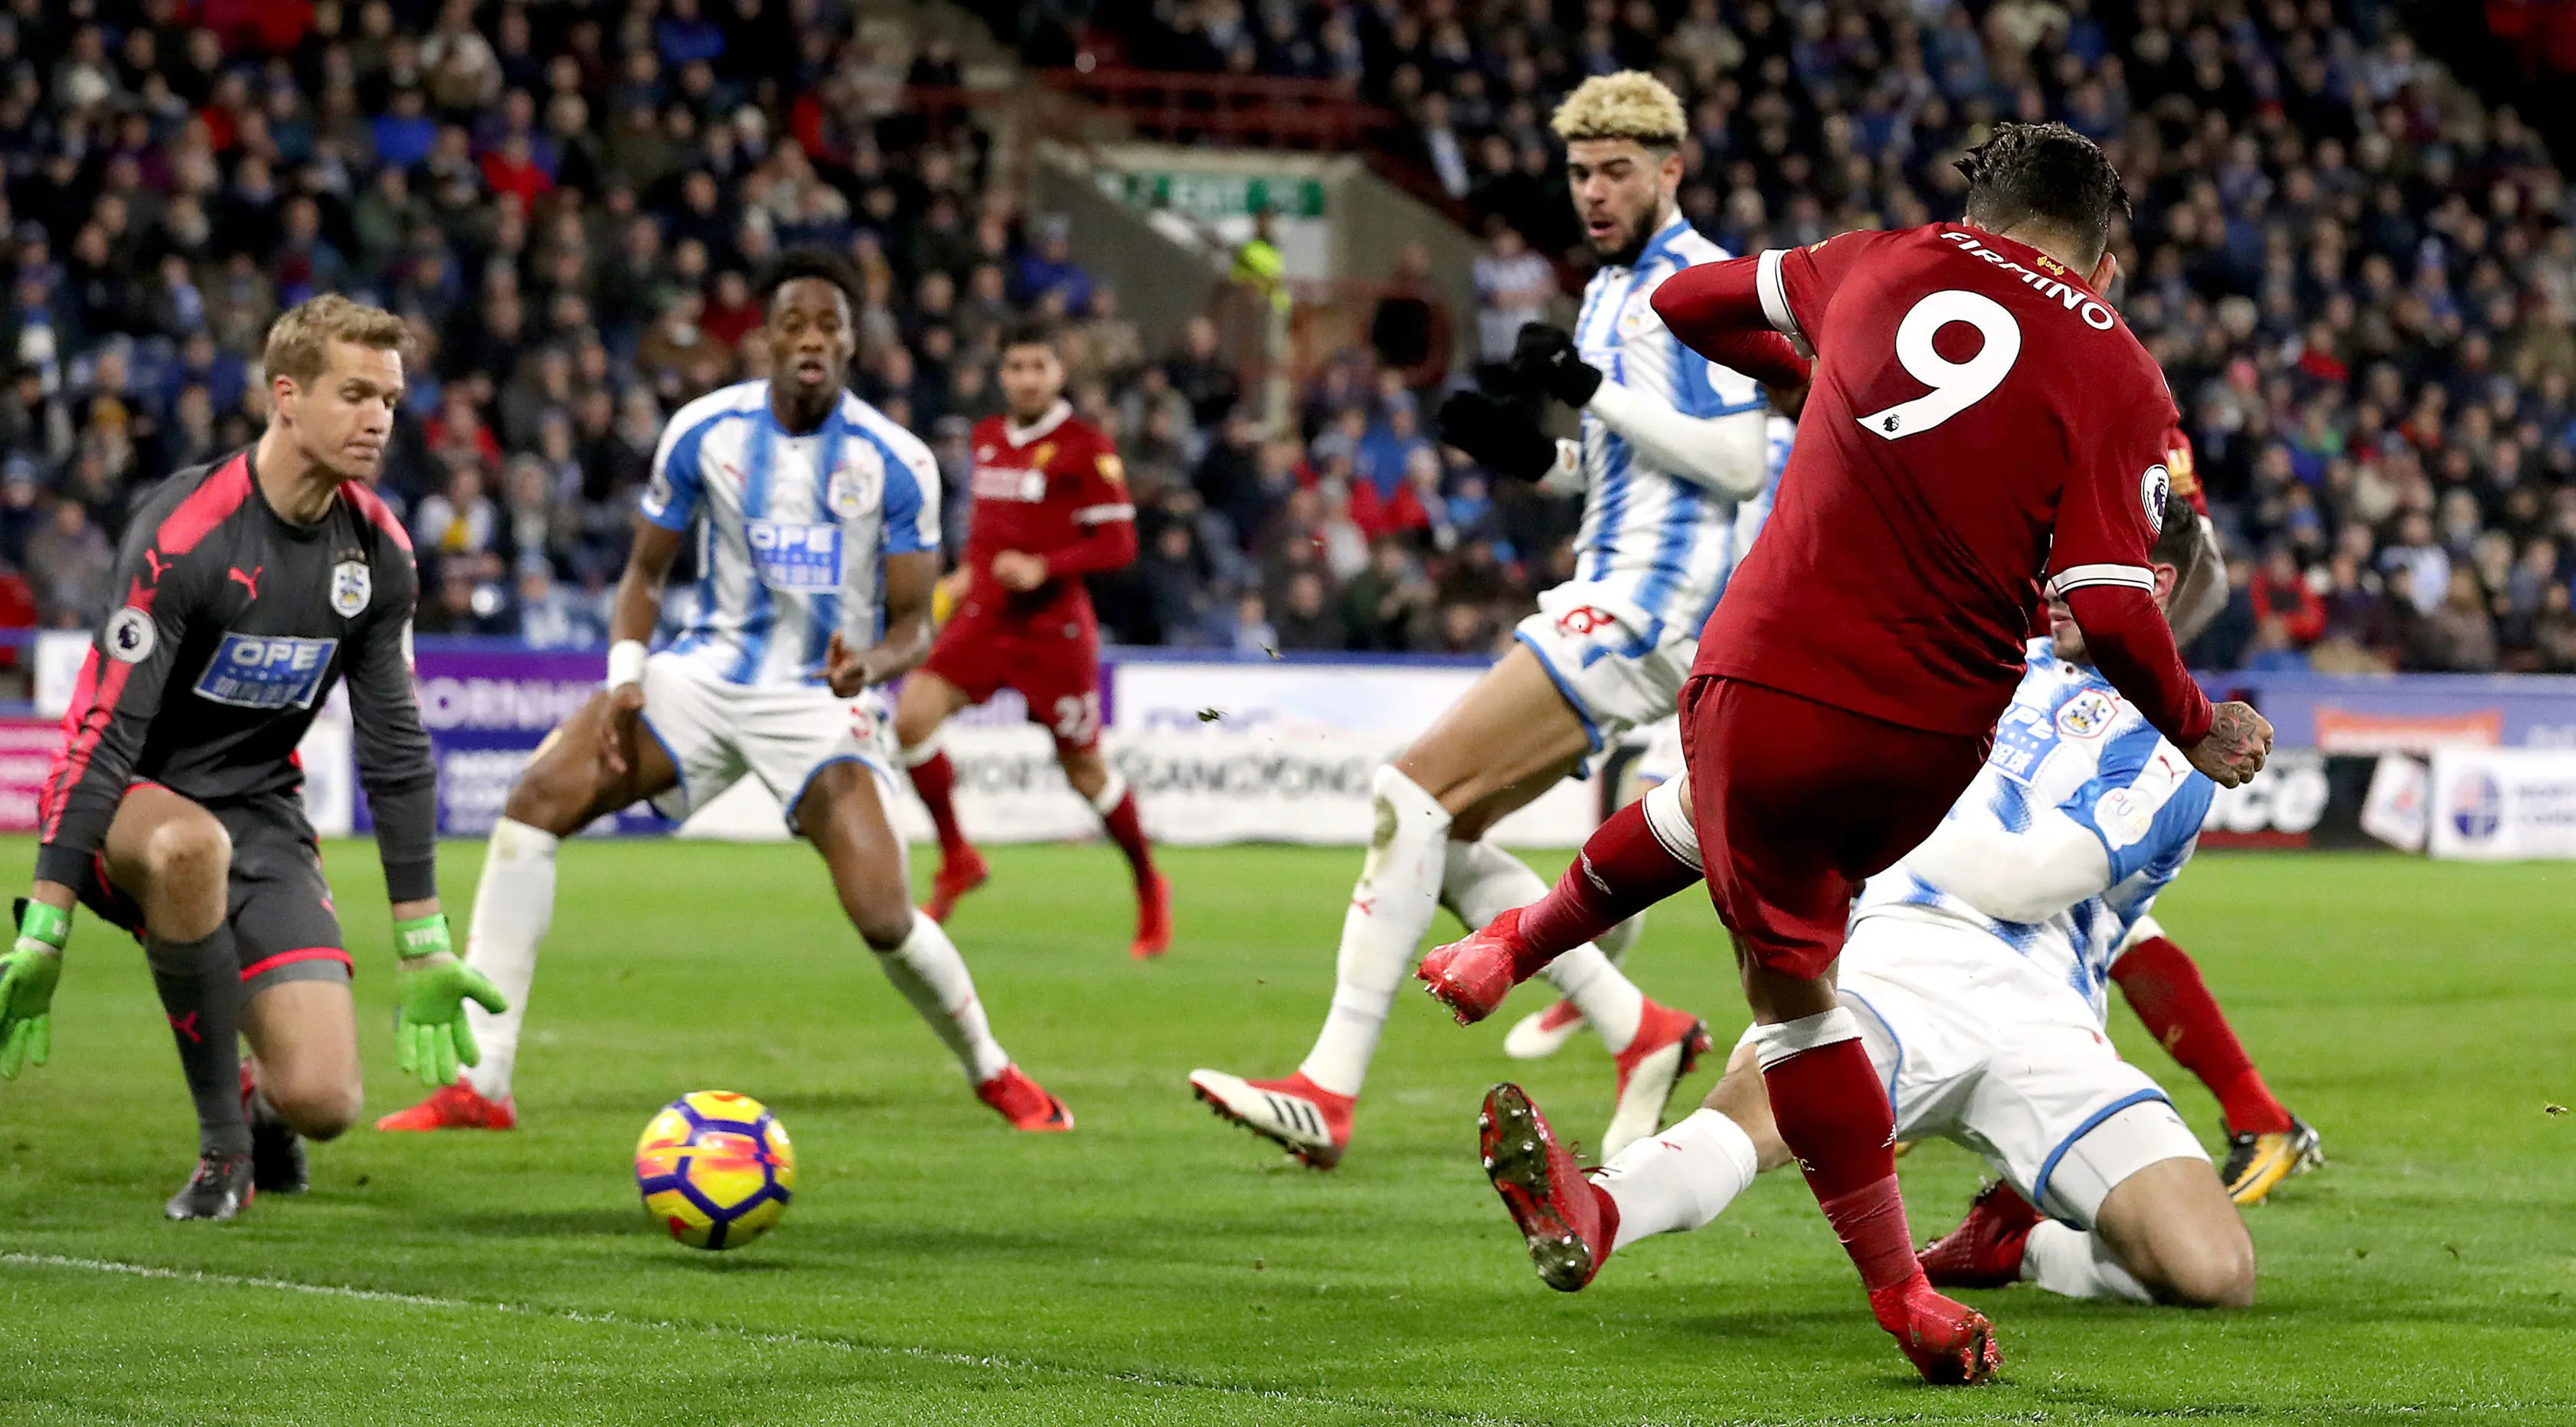 Pemain Liverpool, Roberto Firmino berhasil mencetak gol ke gawang Huddersfield Town pada pertandingan pekan ke-25 Premier League di John Smith's Stadium, Selasa (30/1). Liverpool menang telak tiga gol tanpa balas. (Martin Rickett/PA via AP)